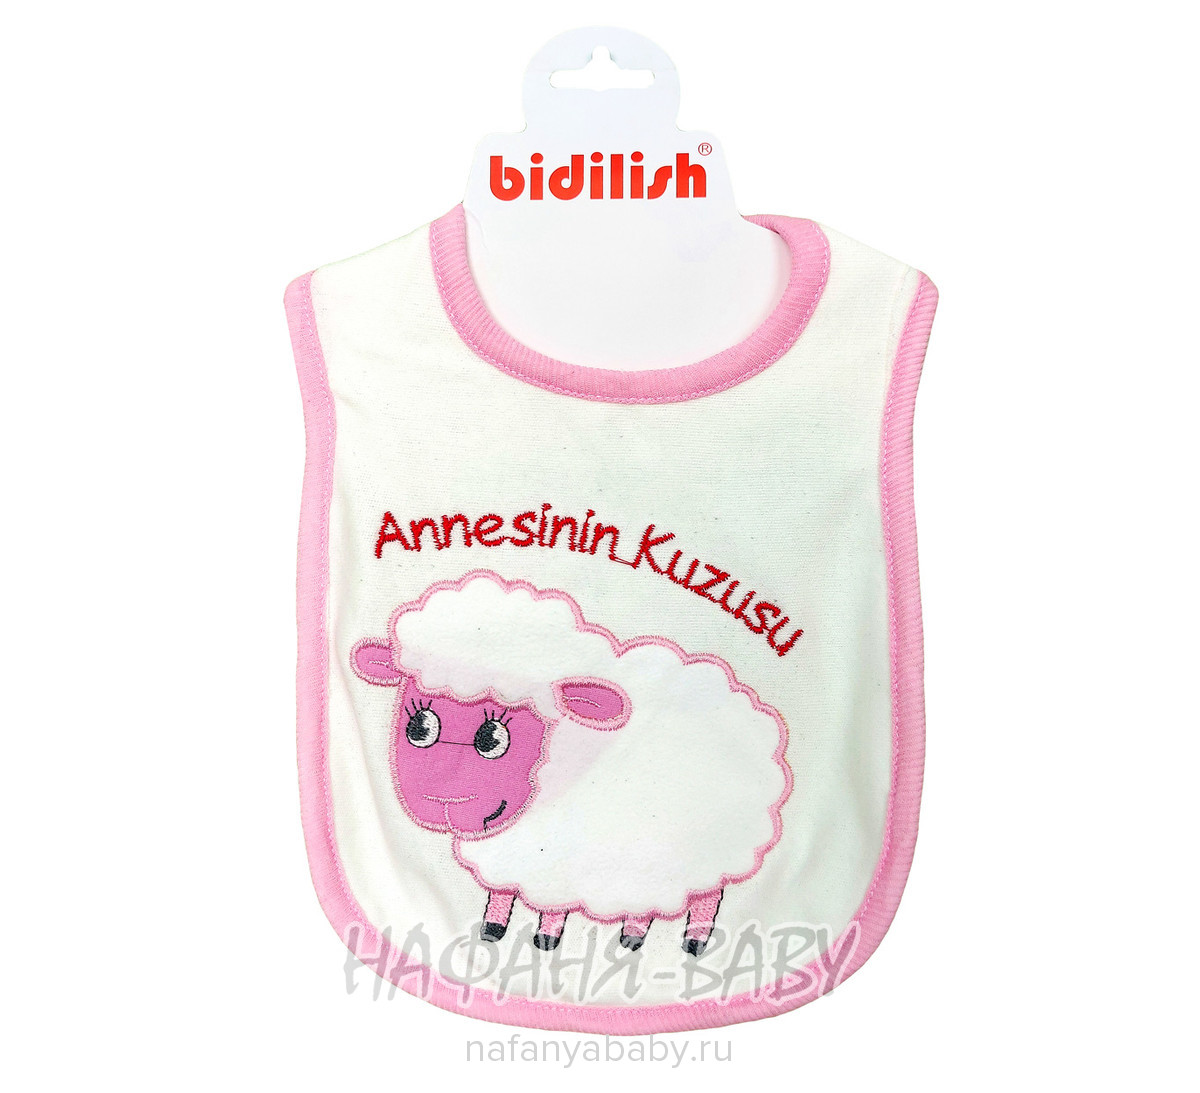 Нагрудник для новорожденных BIDILISH арт: 9067, 0-12 мес, оптом Турция